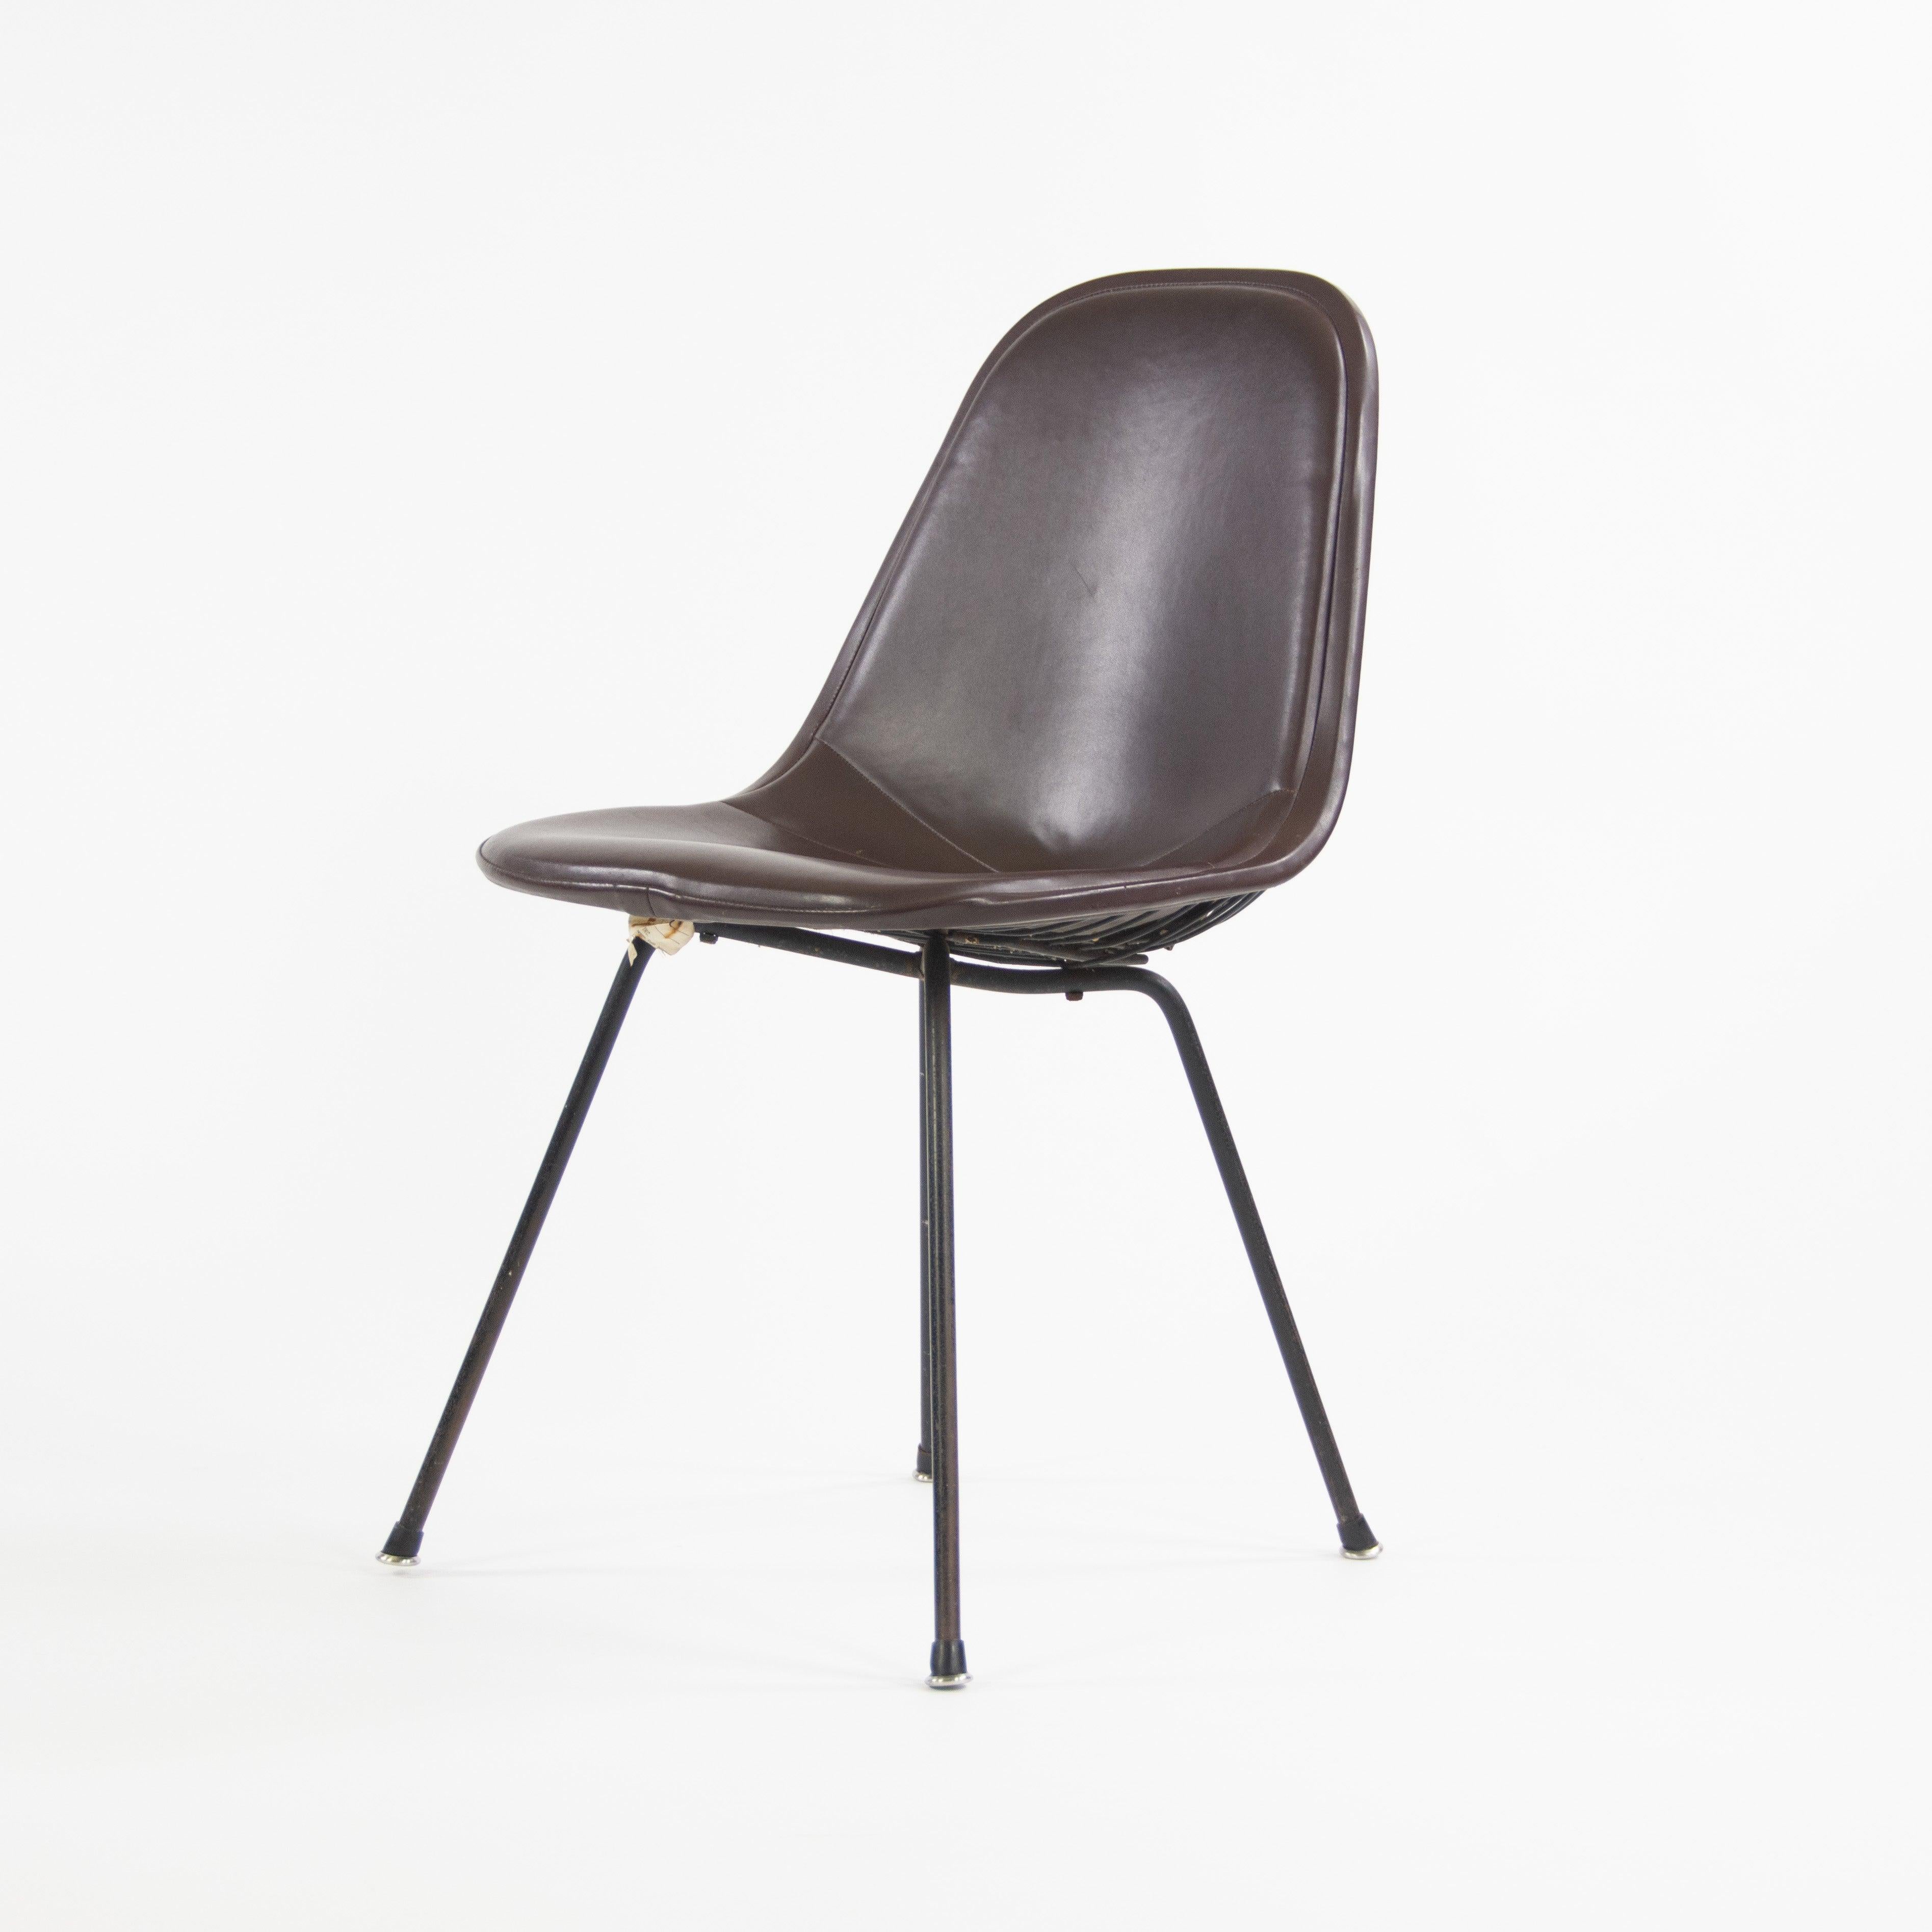 Zum Verkauf steht ein äußerst seltener und originaler DKX-Stuhl von Eames für Herman Miller aus dem Jahr 1954 mit Drahtplatte, gepolstertem pad und frühem X-Fuß.

Dieses Stück kann aufgrund der Verwendung dieser Sockeltypologie datiert werden, da